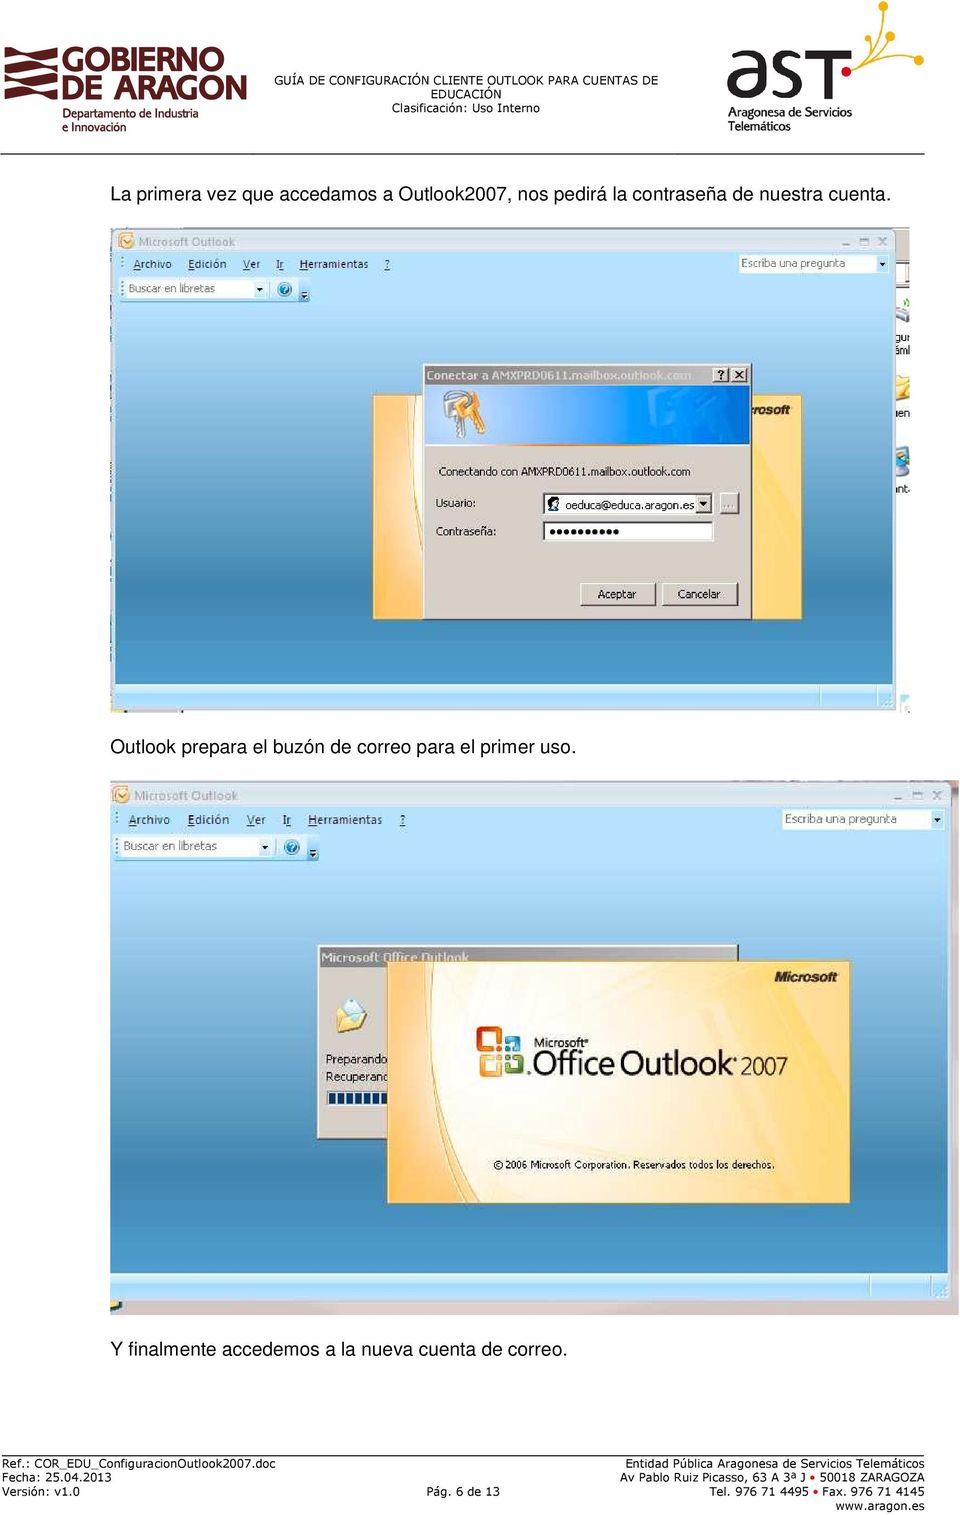 Outlook prepara el buzón de correo para el primer uso.